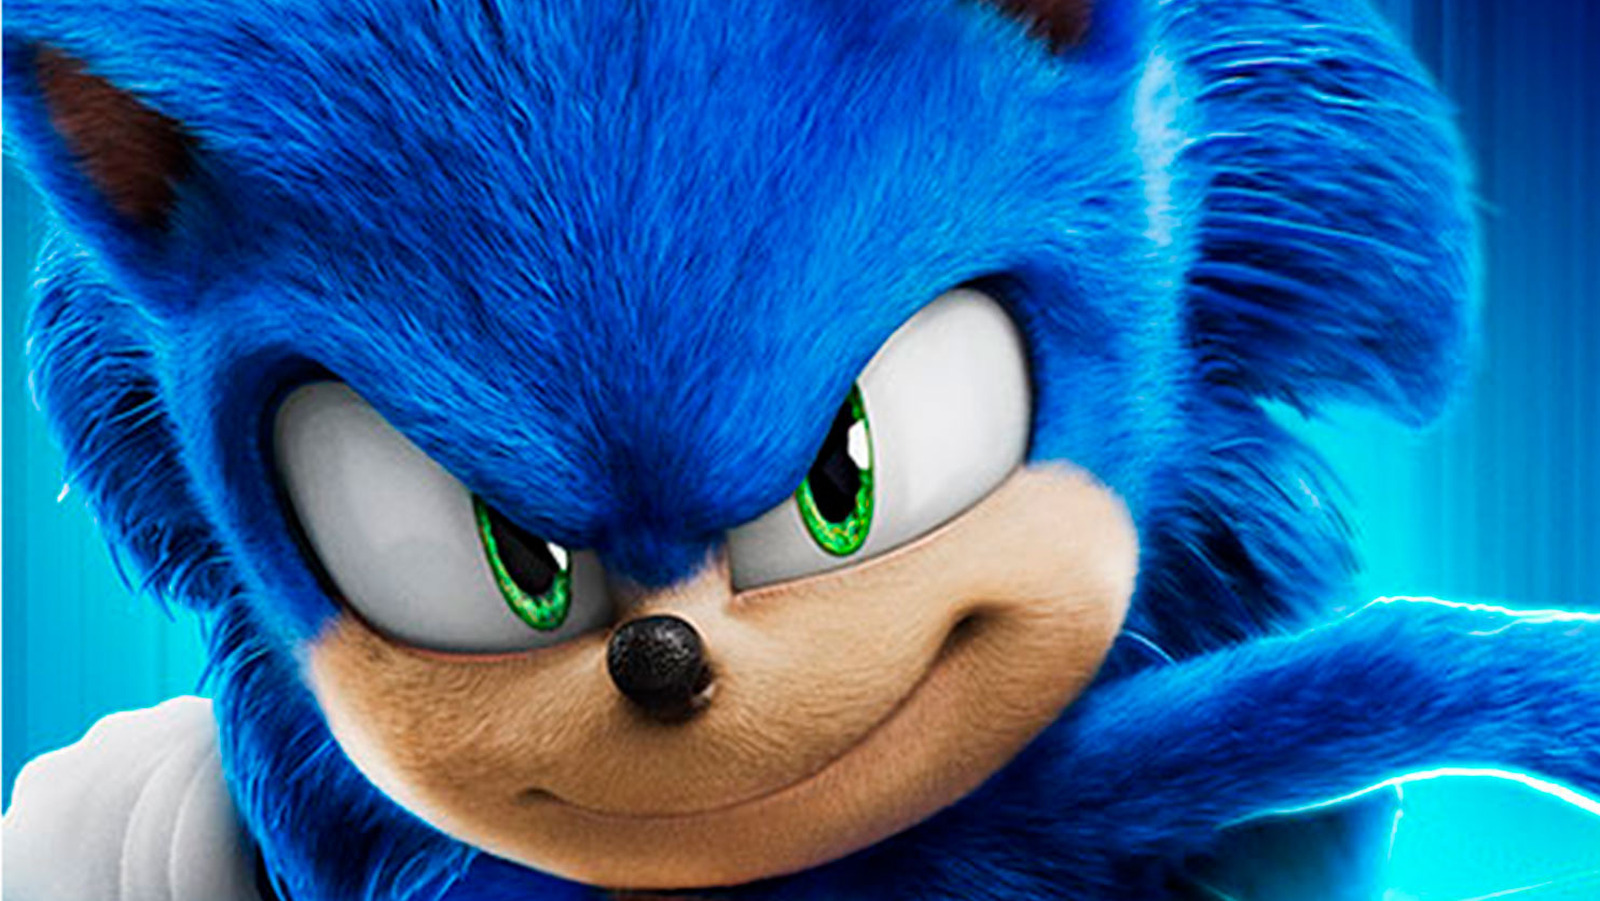 The Origin of Sonic The Hedgehog - Full Scene 